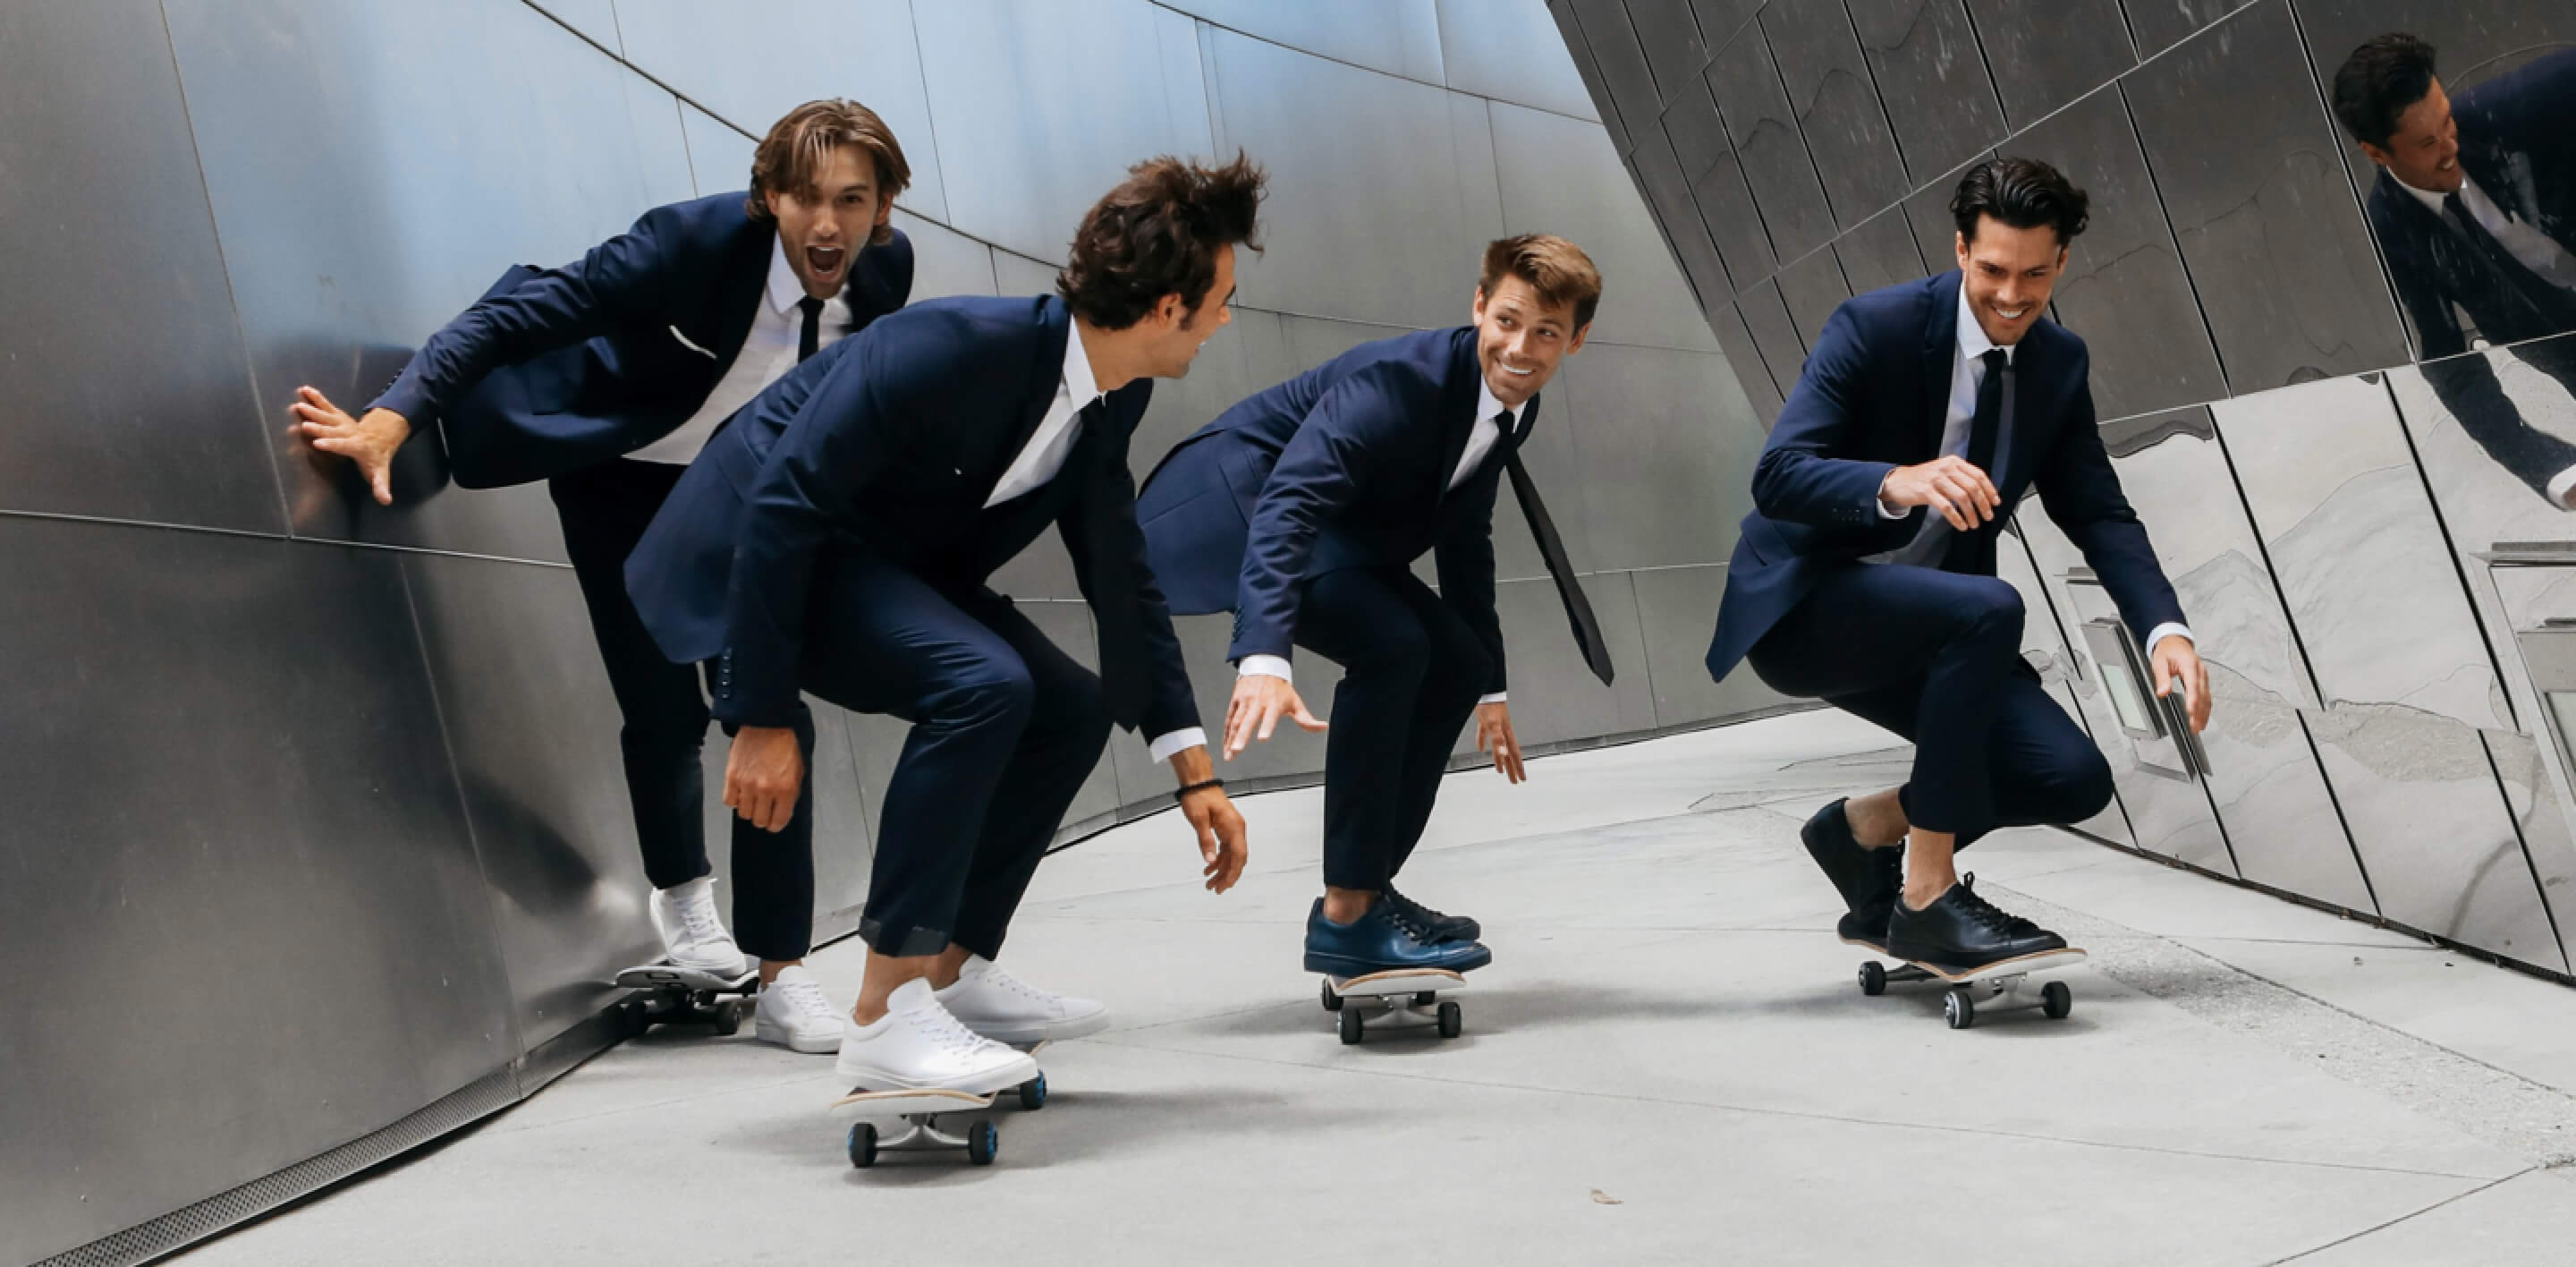 Men in suits skateboarding